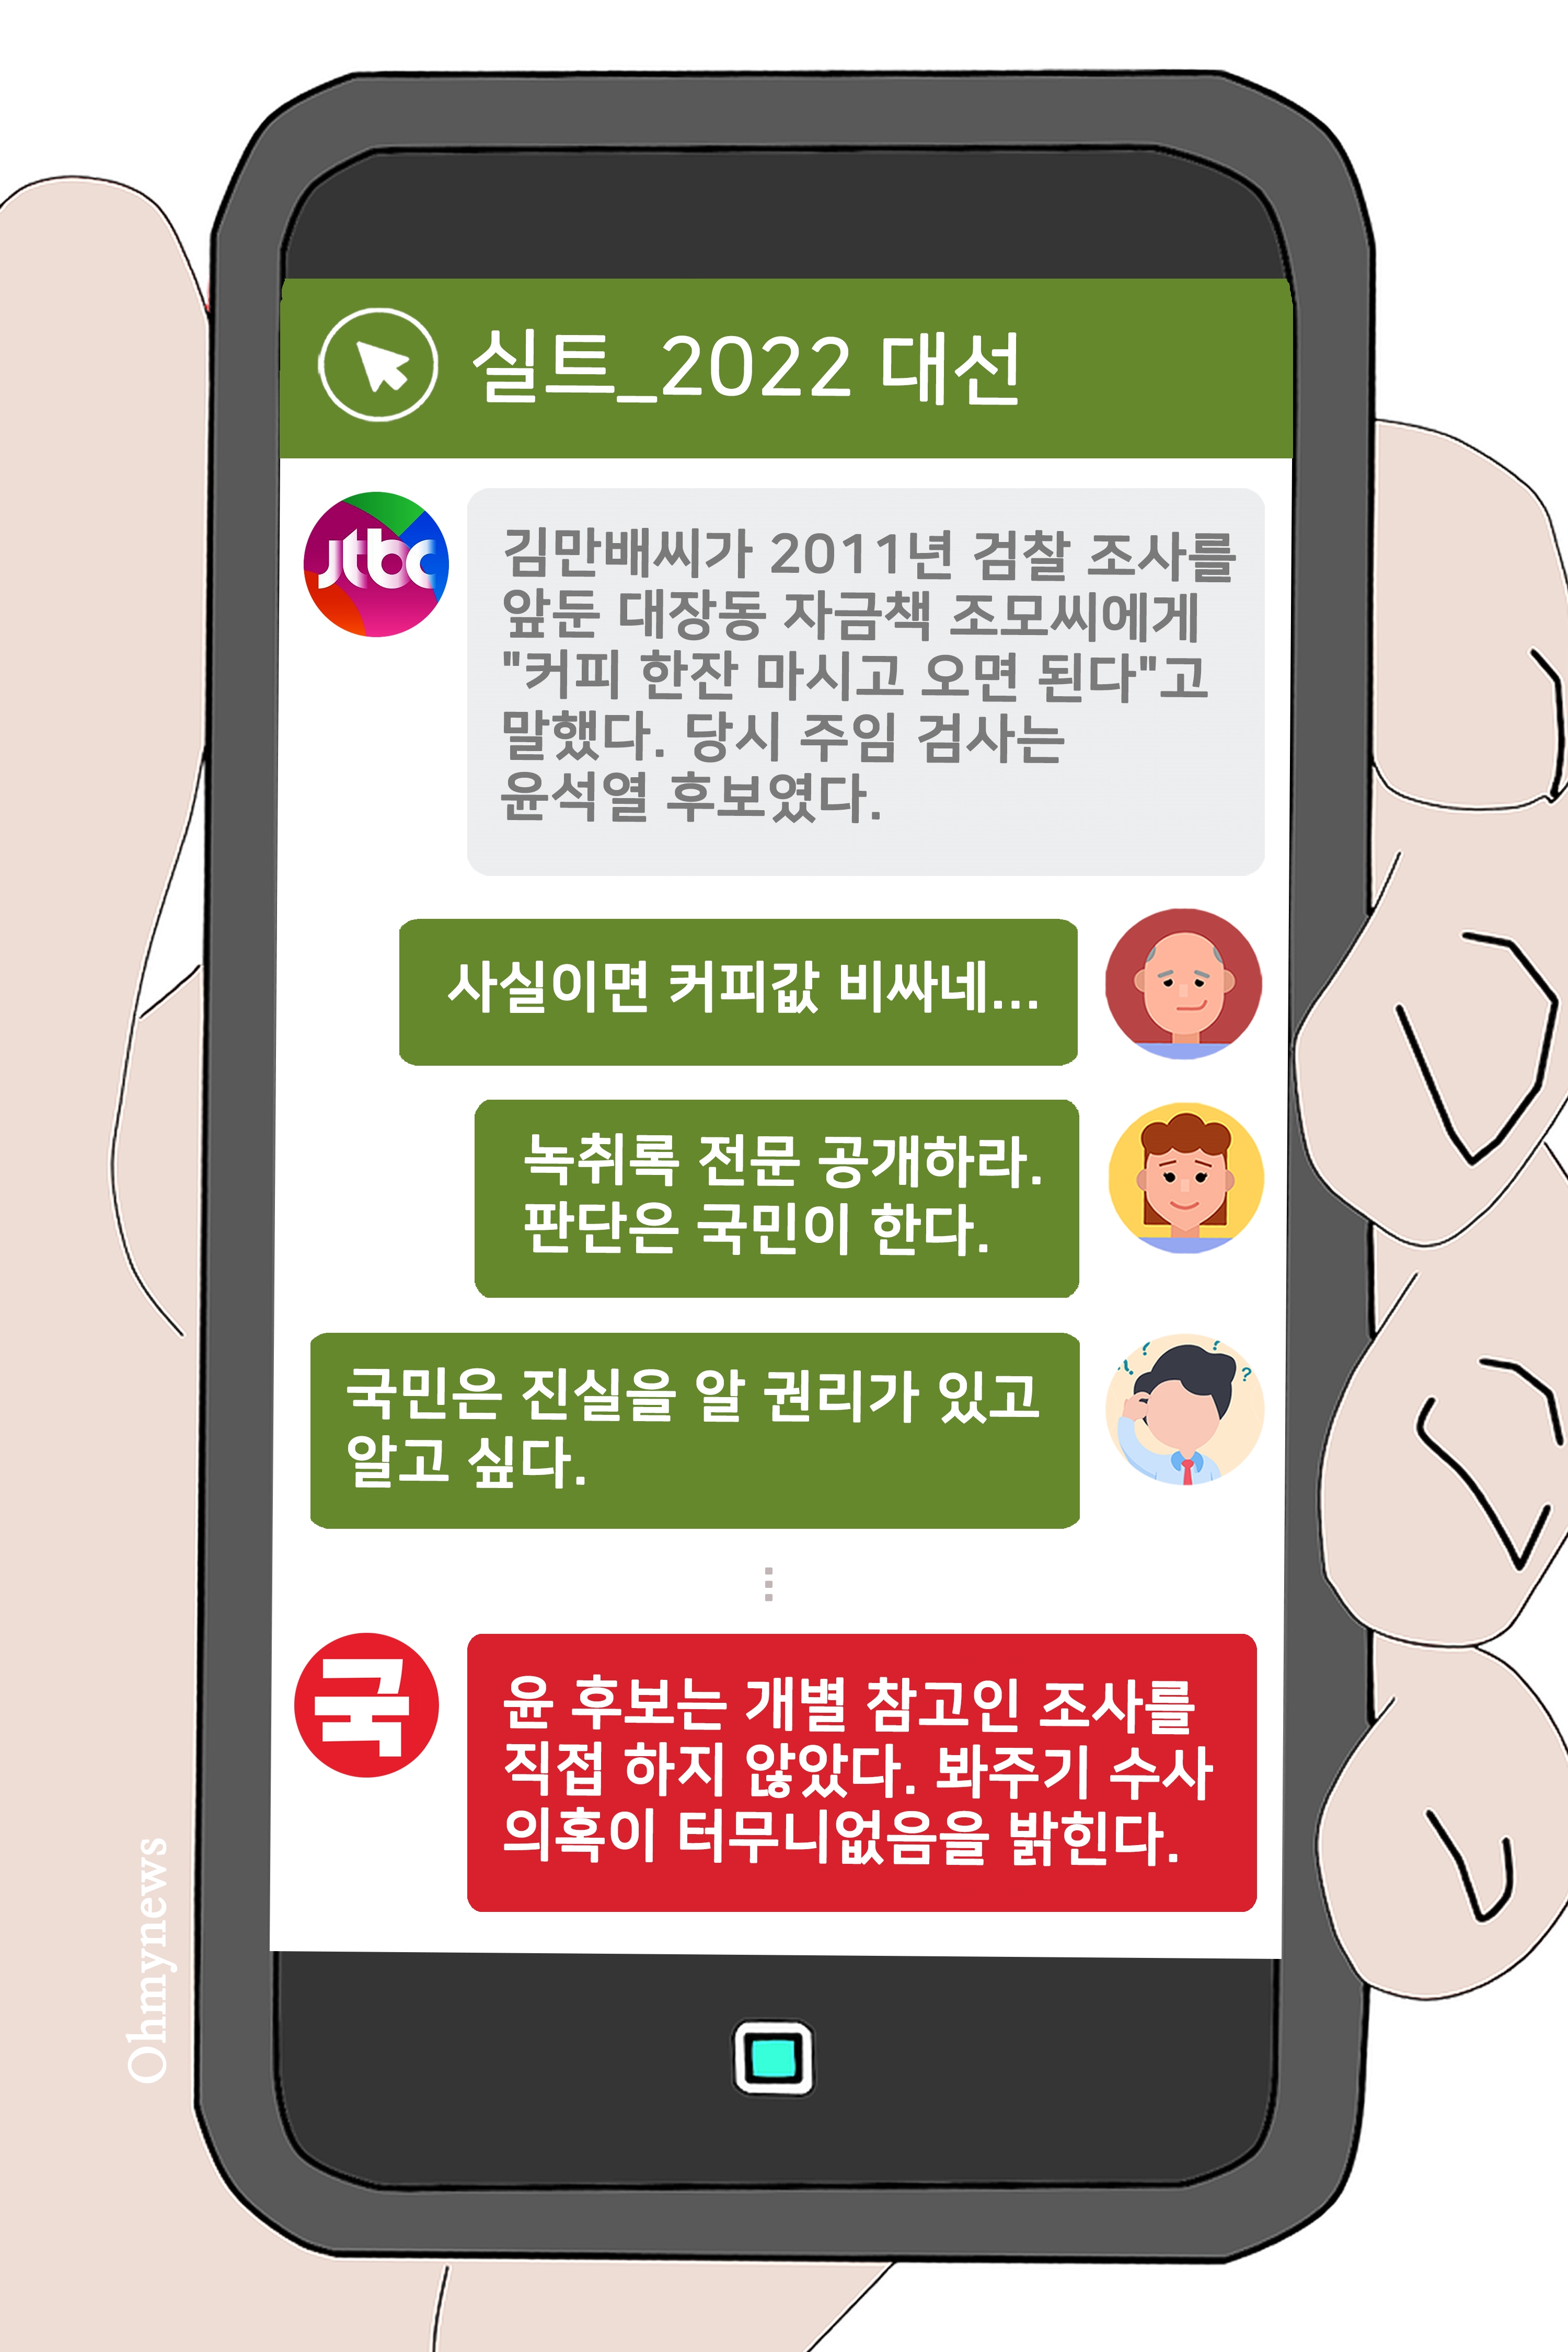 [실트_2022 대선] JTBC 보도로 제기된 윤석열 대장동 관련 수사 개입 의혹